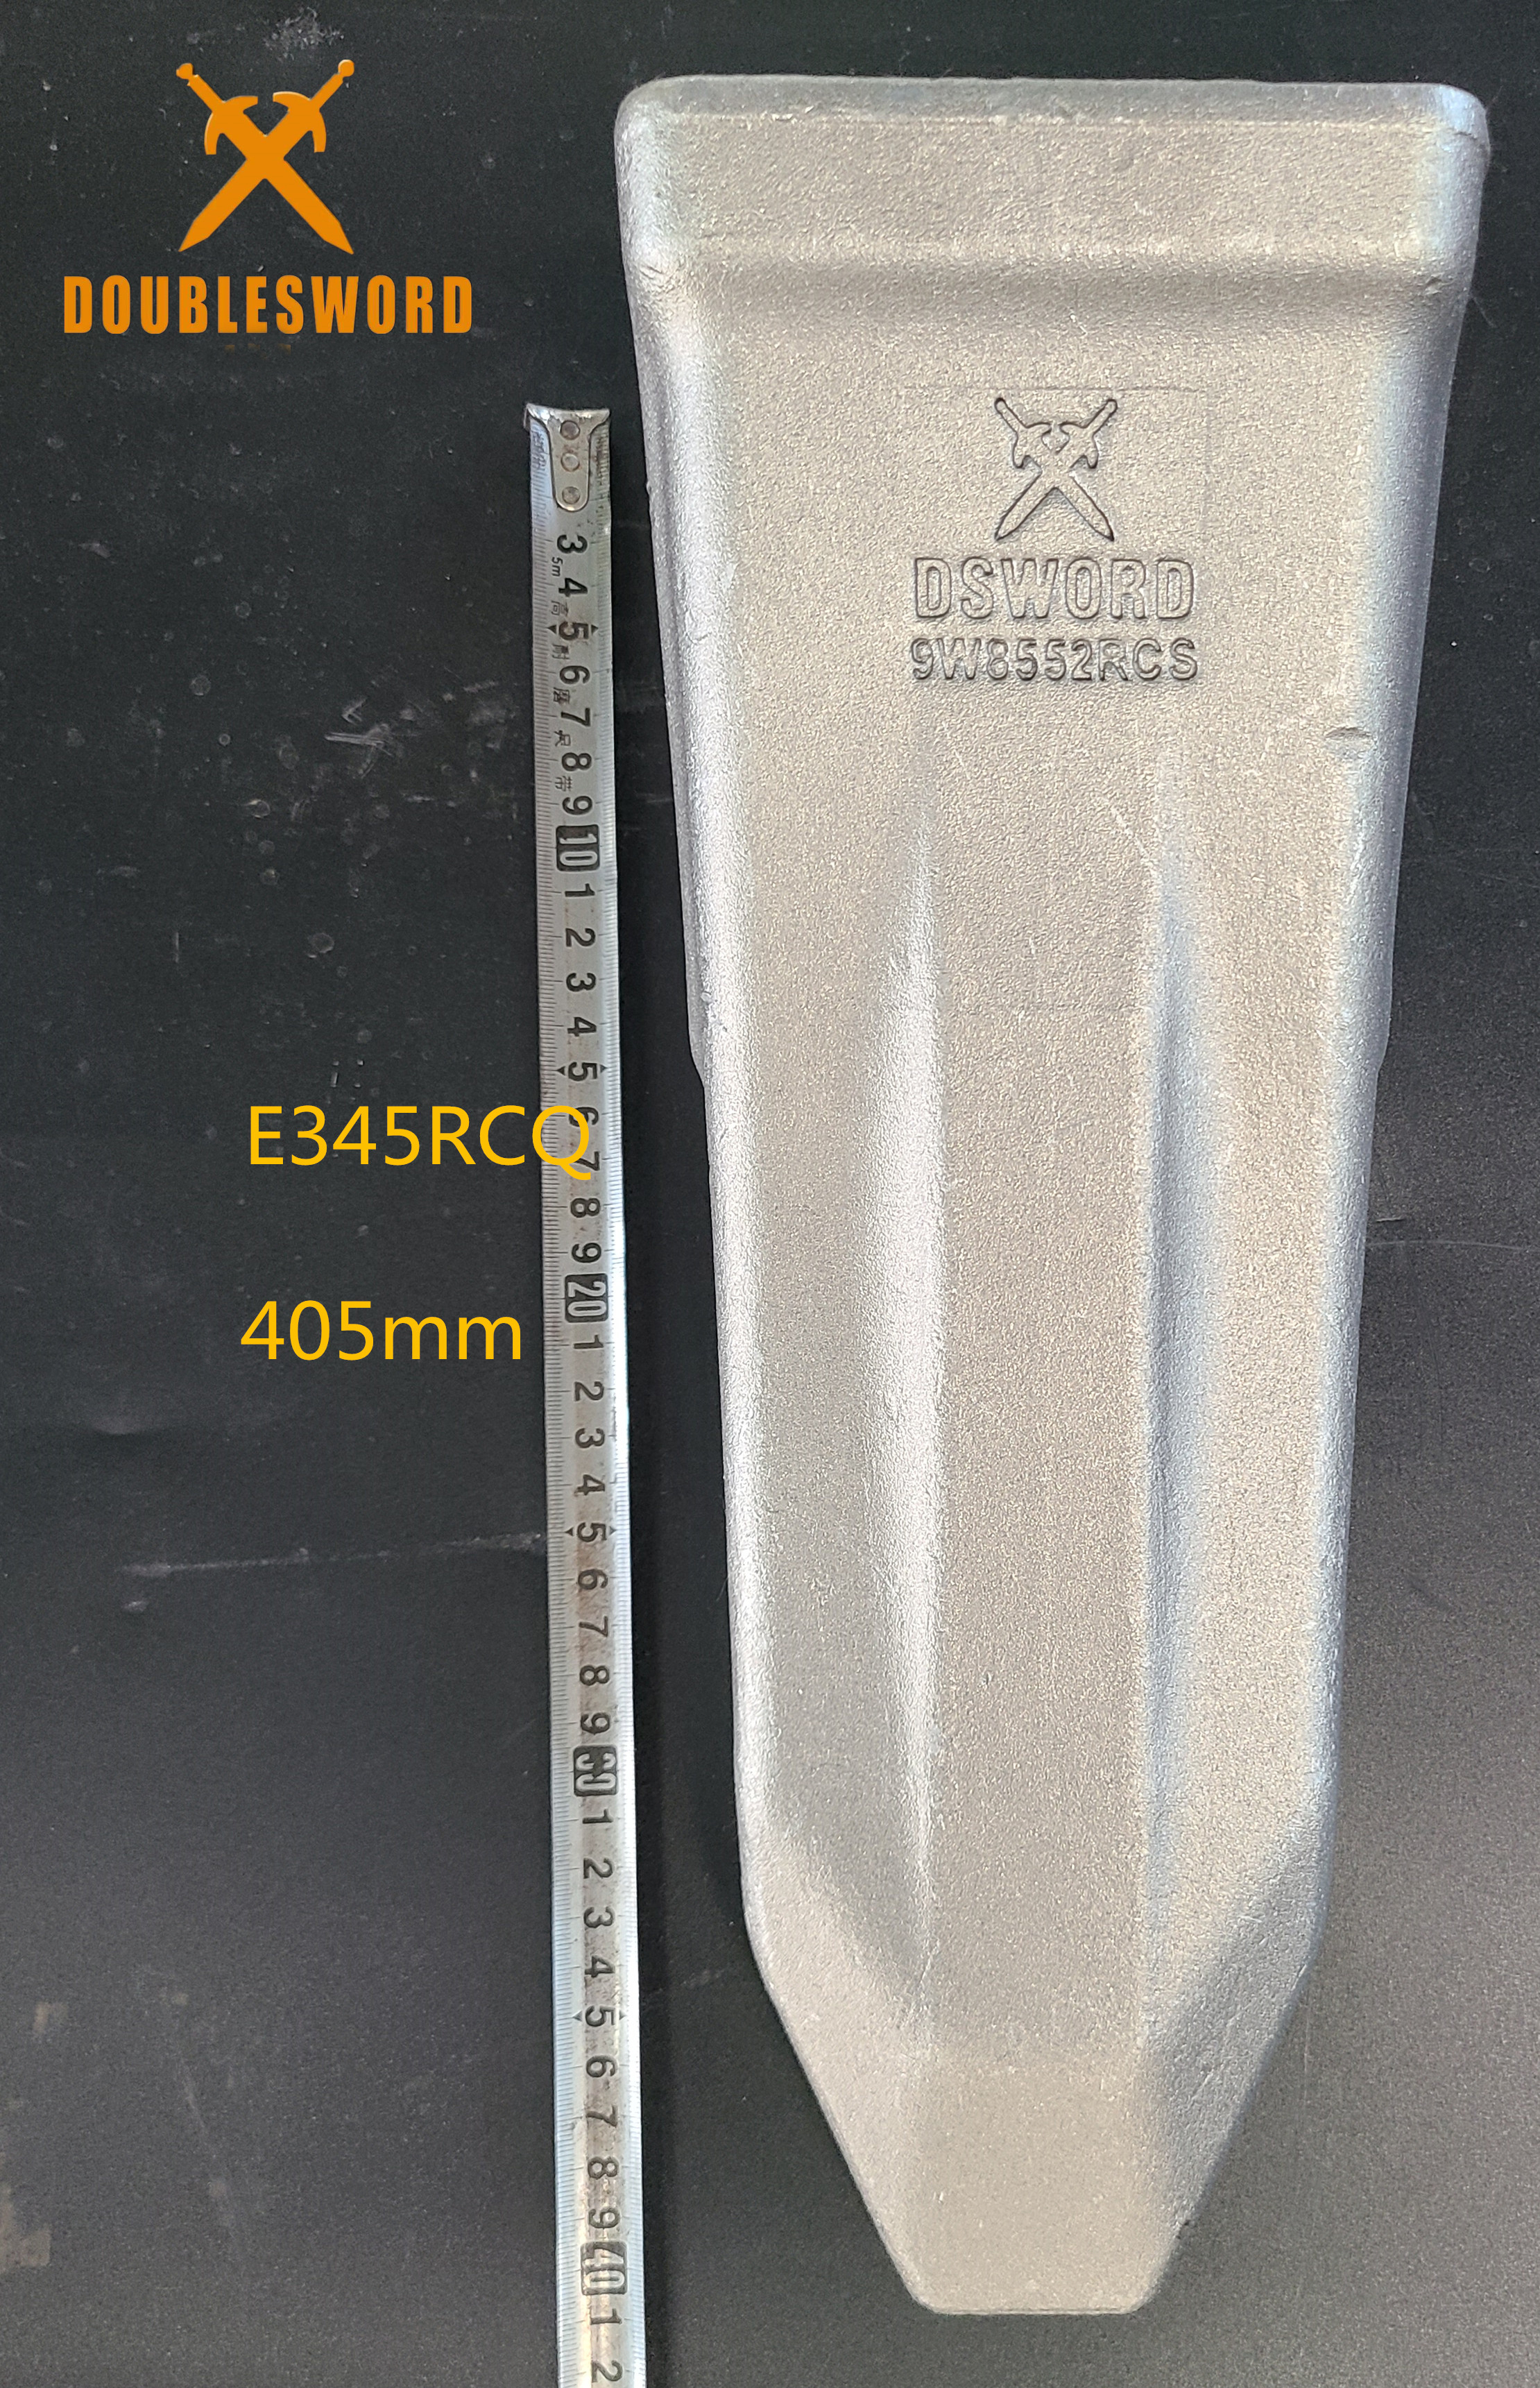 굴삭기 E345 9W8552 버킷 치아 및 핀 및 리테이너 헤비 듀티 굴삭기 예비 부품용 암석 유형 버킷 치아